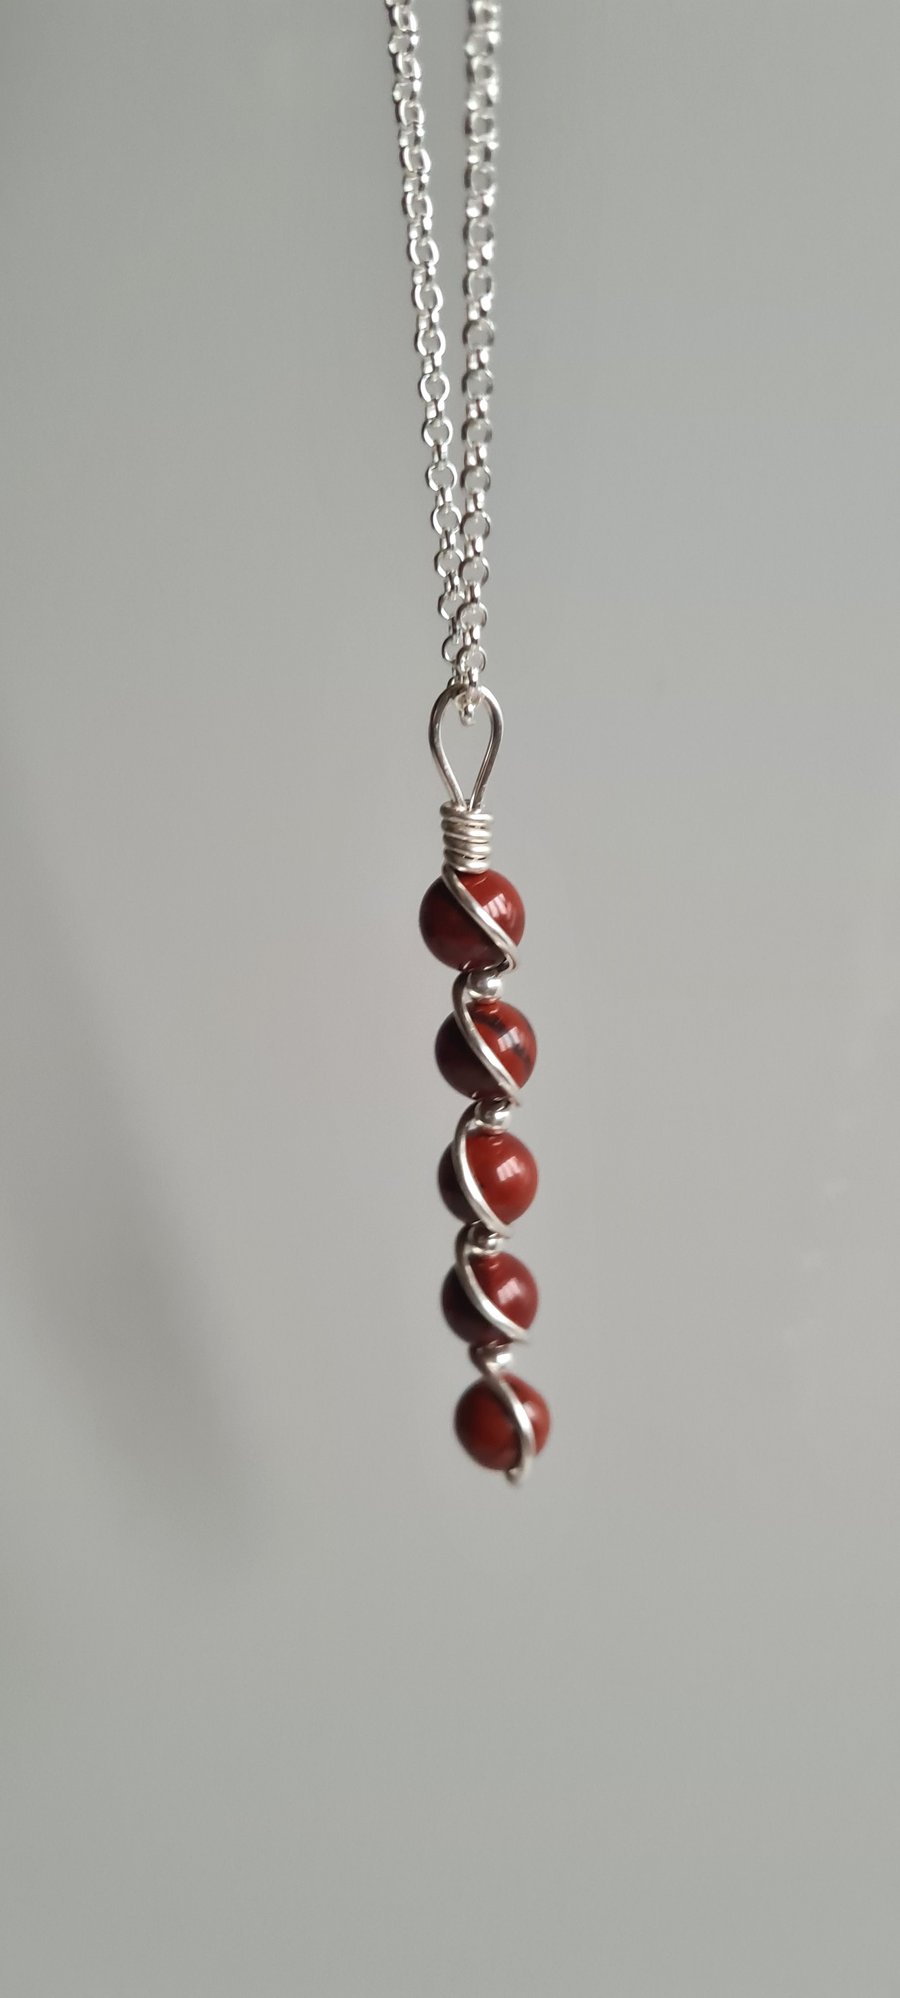 Handmade 925 Silver & Red Snakeskin Jasper Pendant Necklace Chain & Gift Boxed 